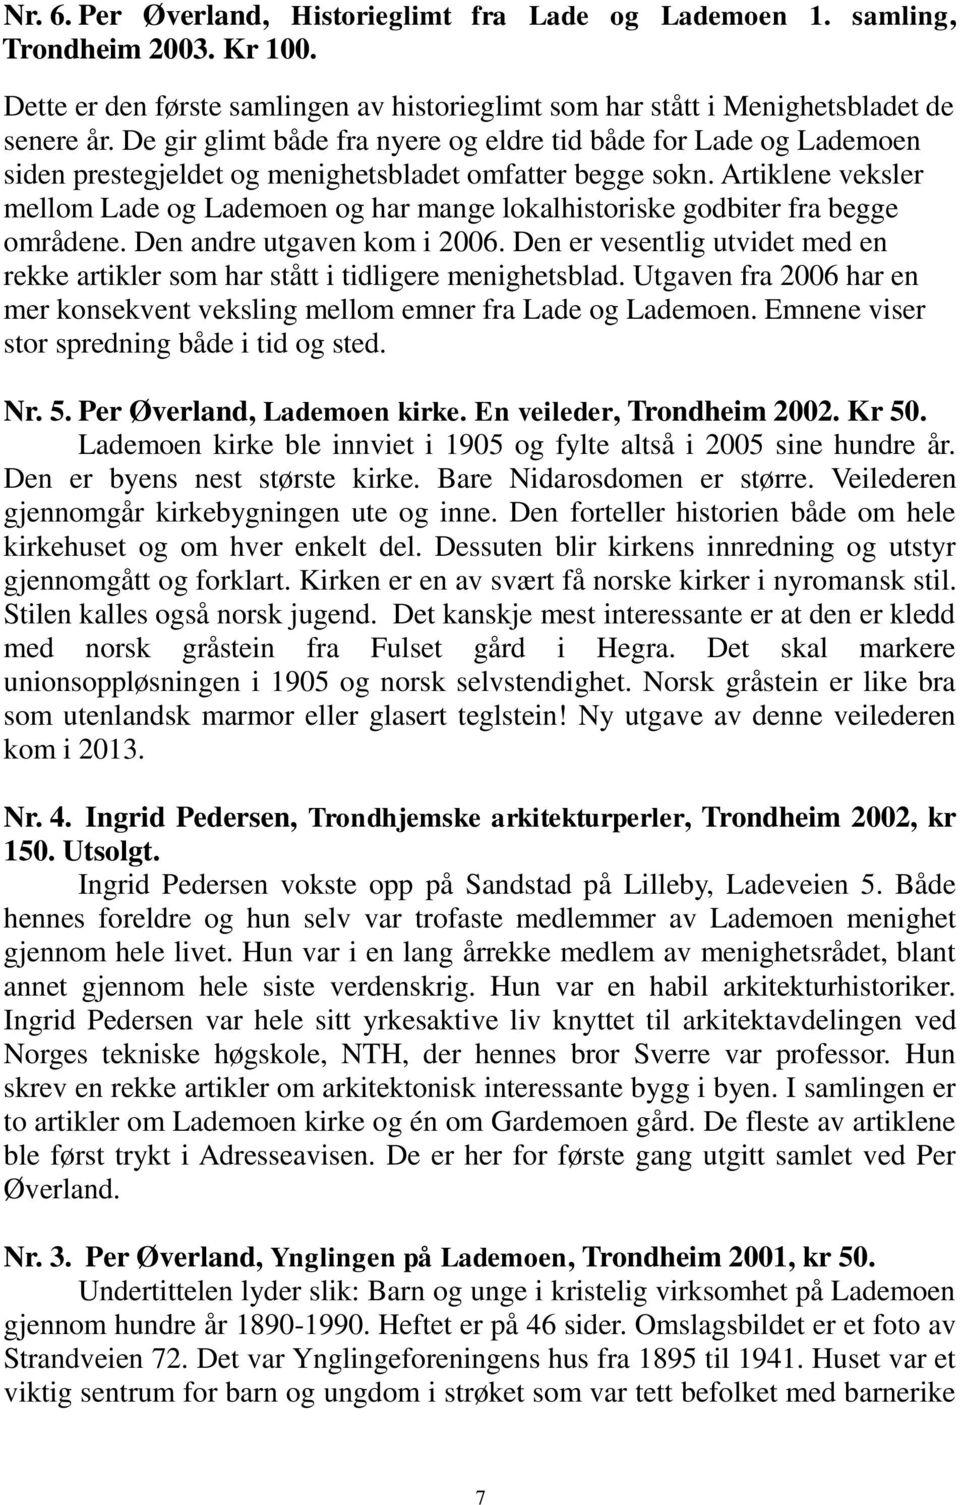 Artiklene veksler mellom Lade og Lademoen og har mange lokalhistoriske godbiter fra begge områdene. Den andre utgaven kom i 2006.